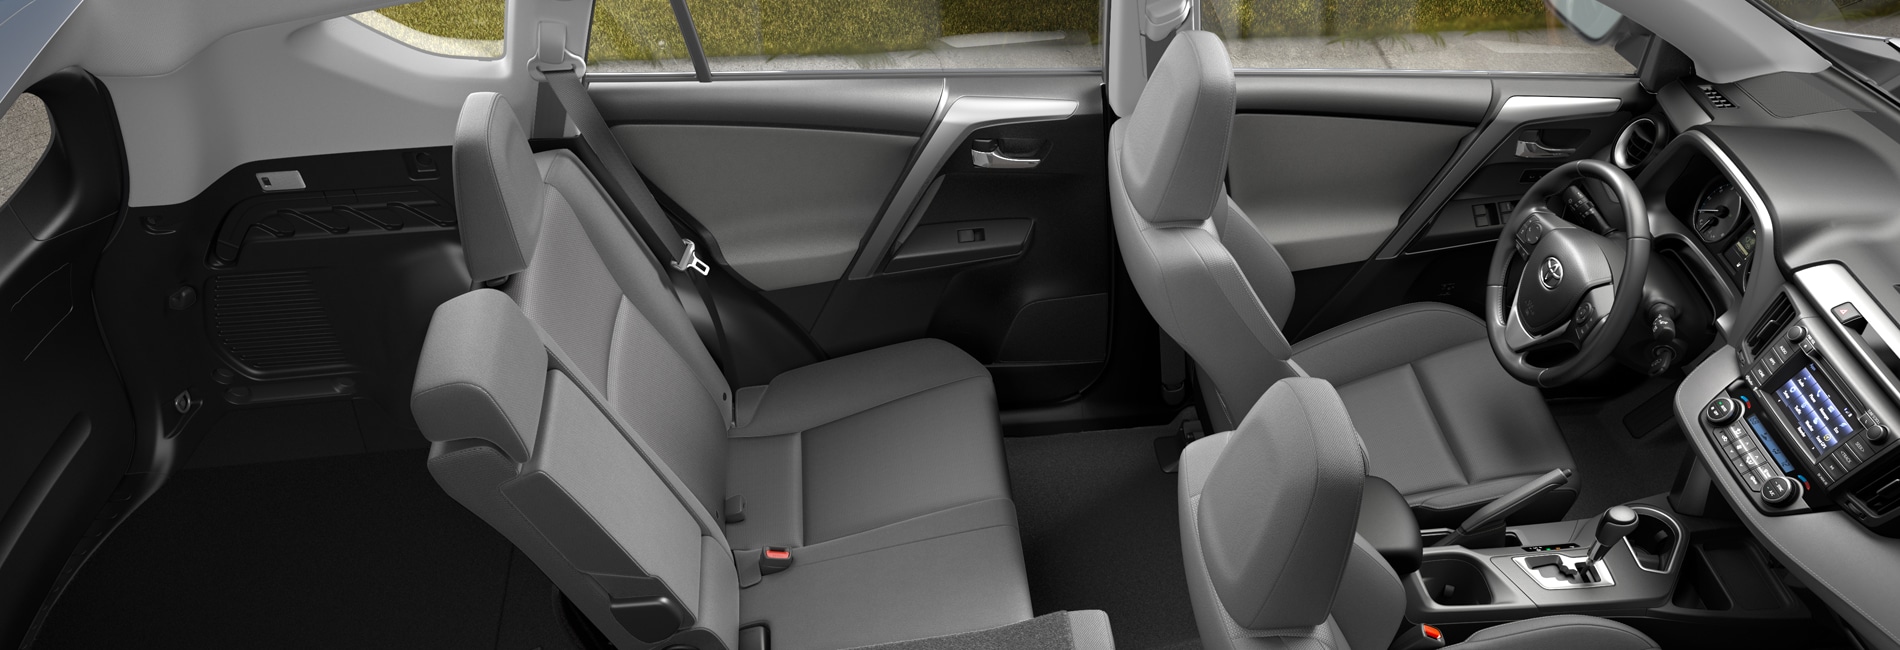 Toyota RAV4 Interior Vehicle Features